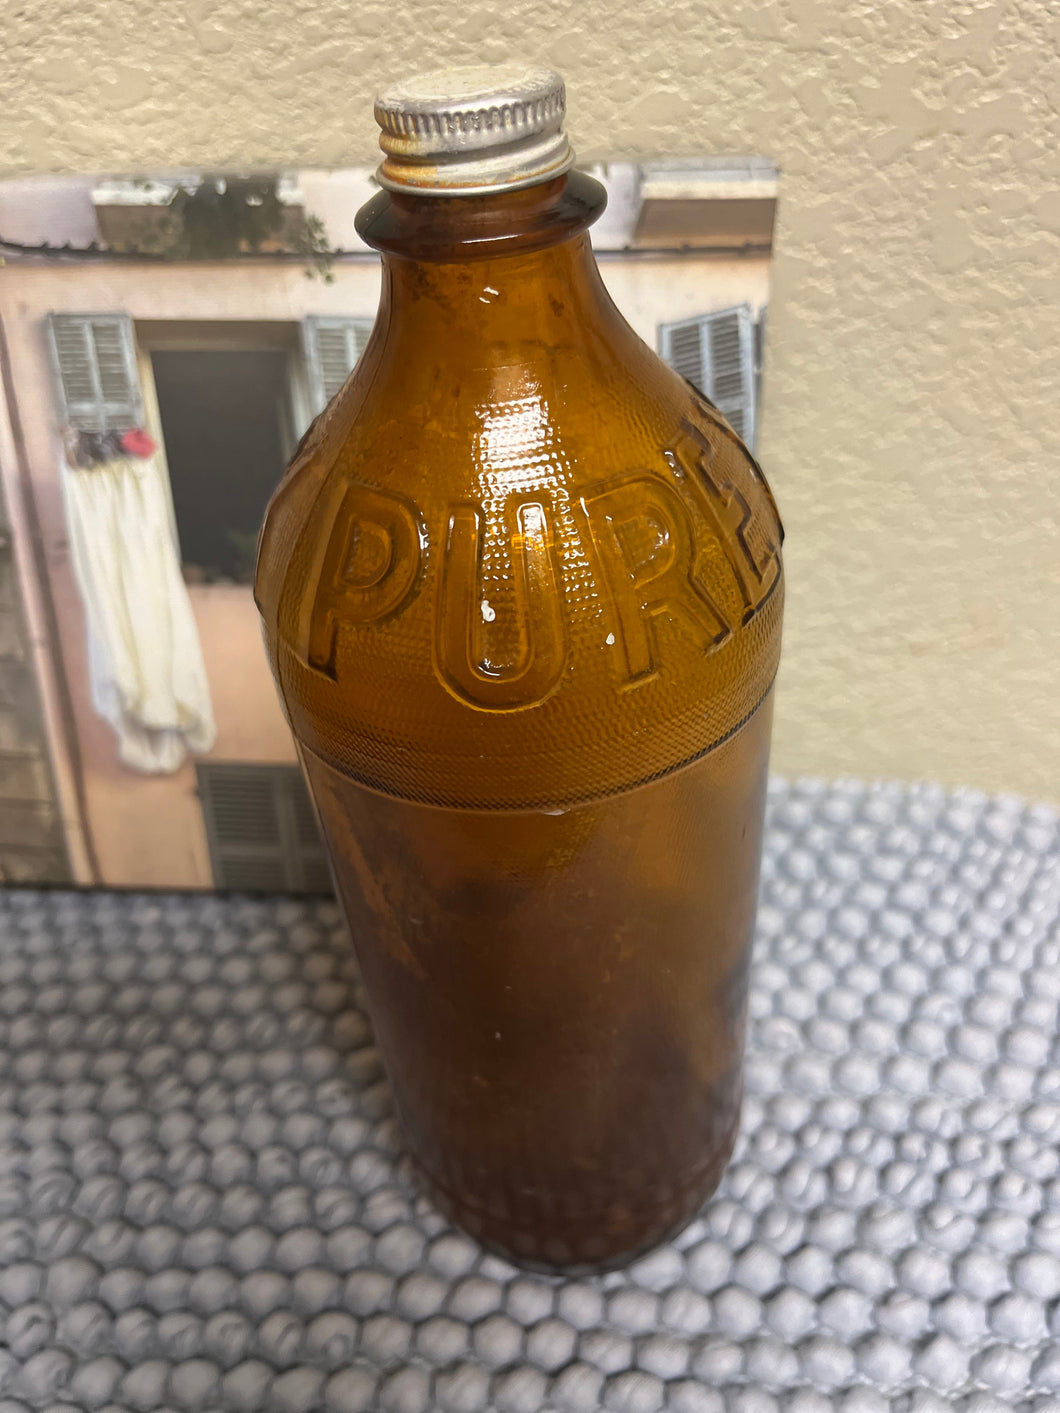 Puréx vintage bottle